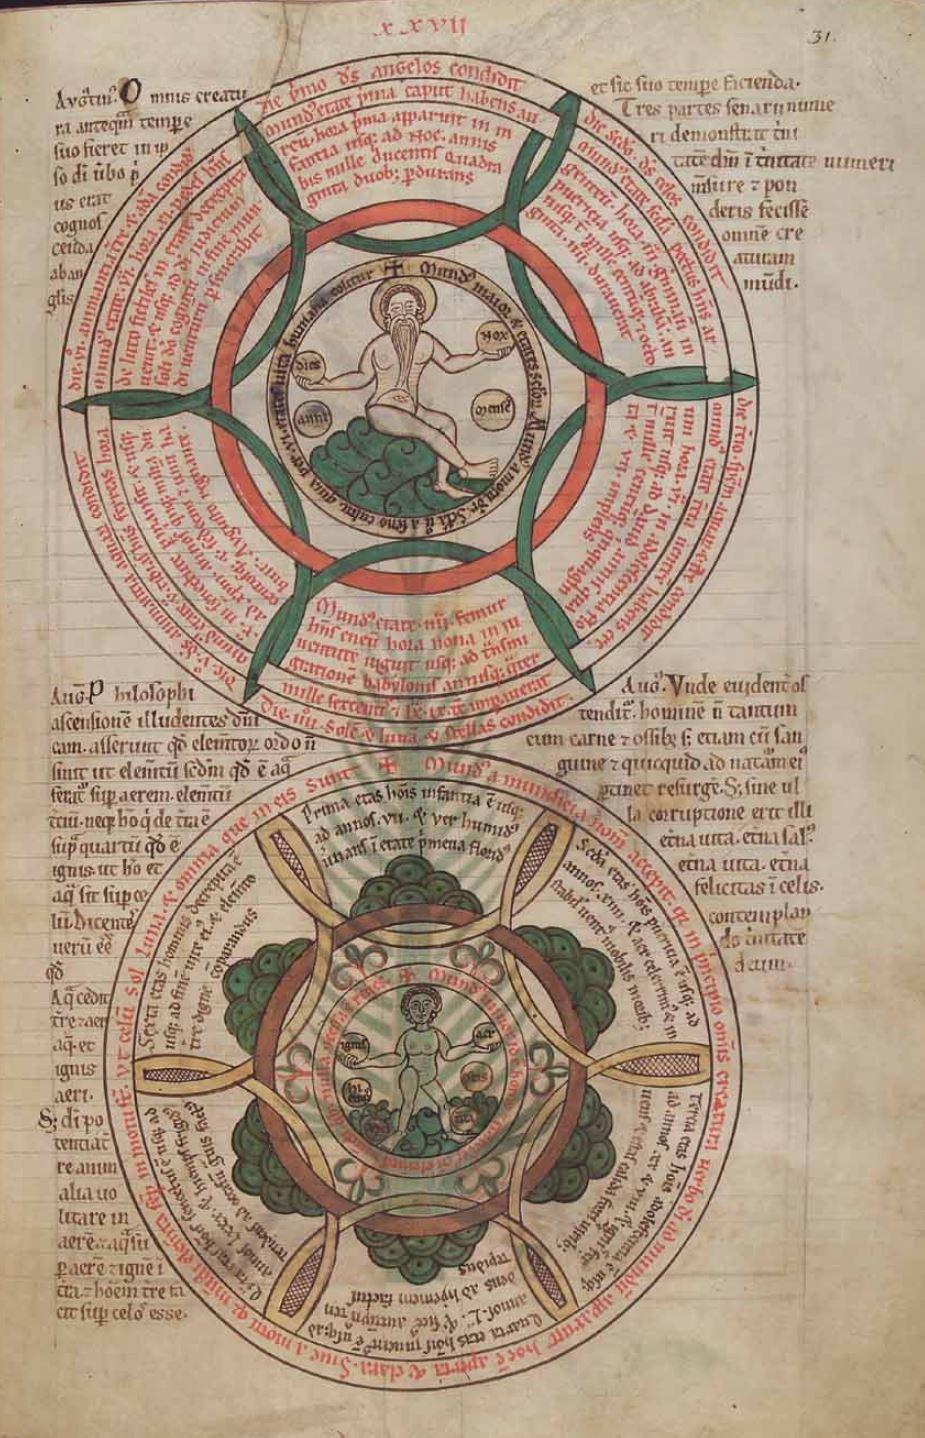 1150-75 Liber floridus Herzog August Bibliothek Cod. Guelf. 1 Gud. lat 2 31r Diagramm zu den sechs Tagen der Schöpfung (Makrokosmos) den sechs Altersstufen des Menschen (Mikrokosmos)